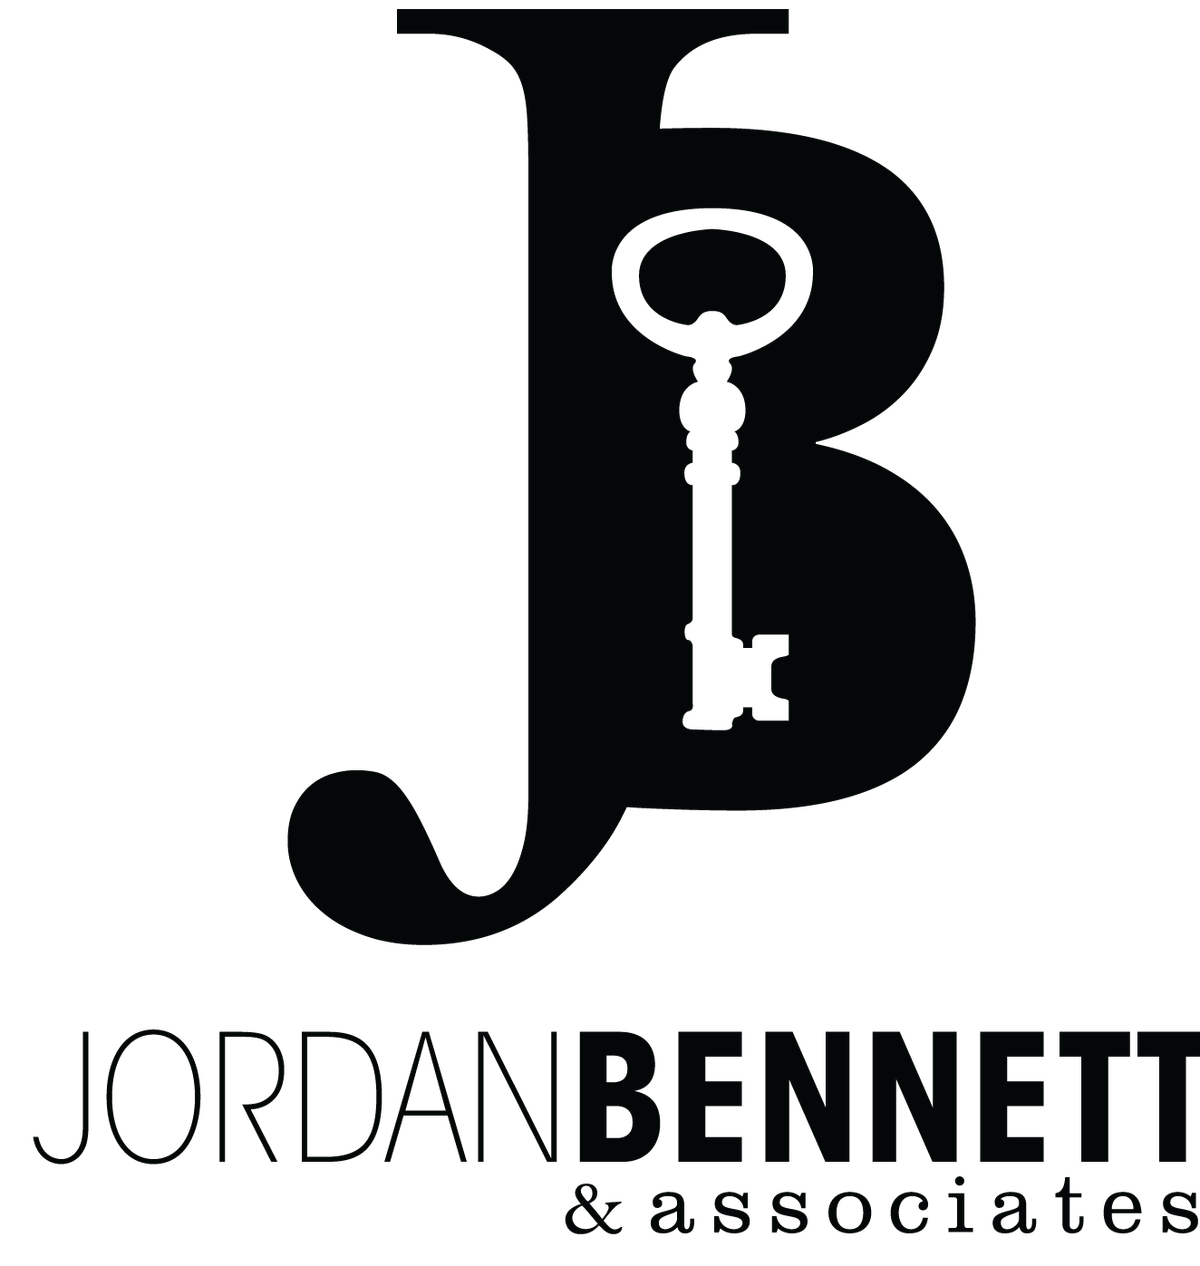 Jordan Bennett